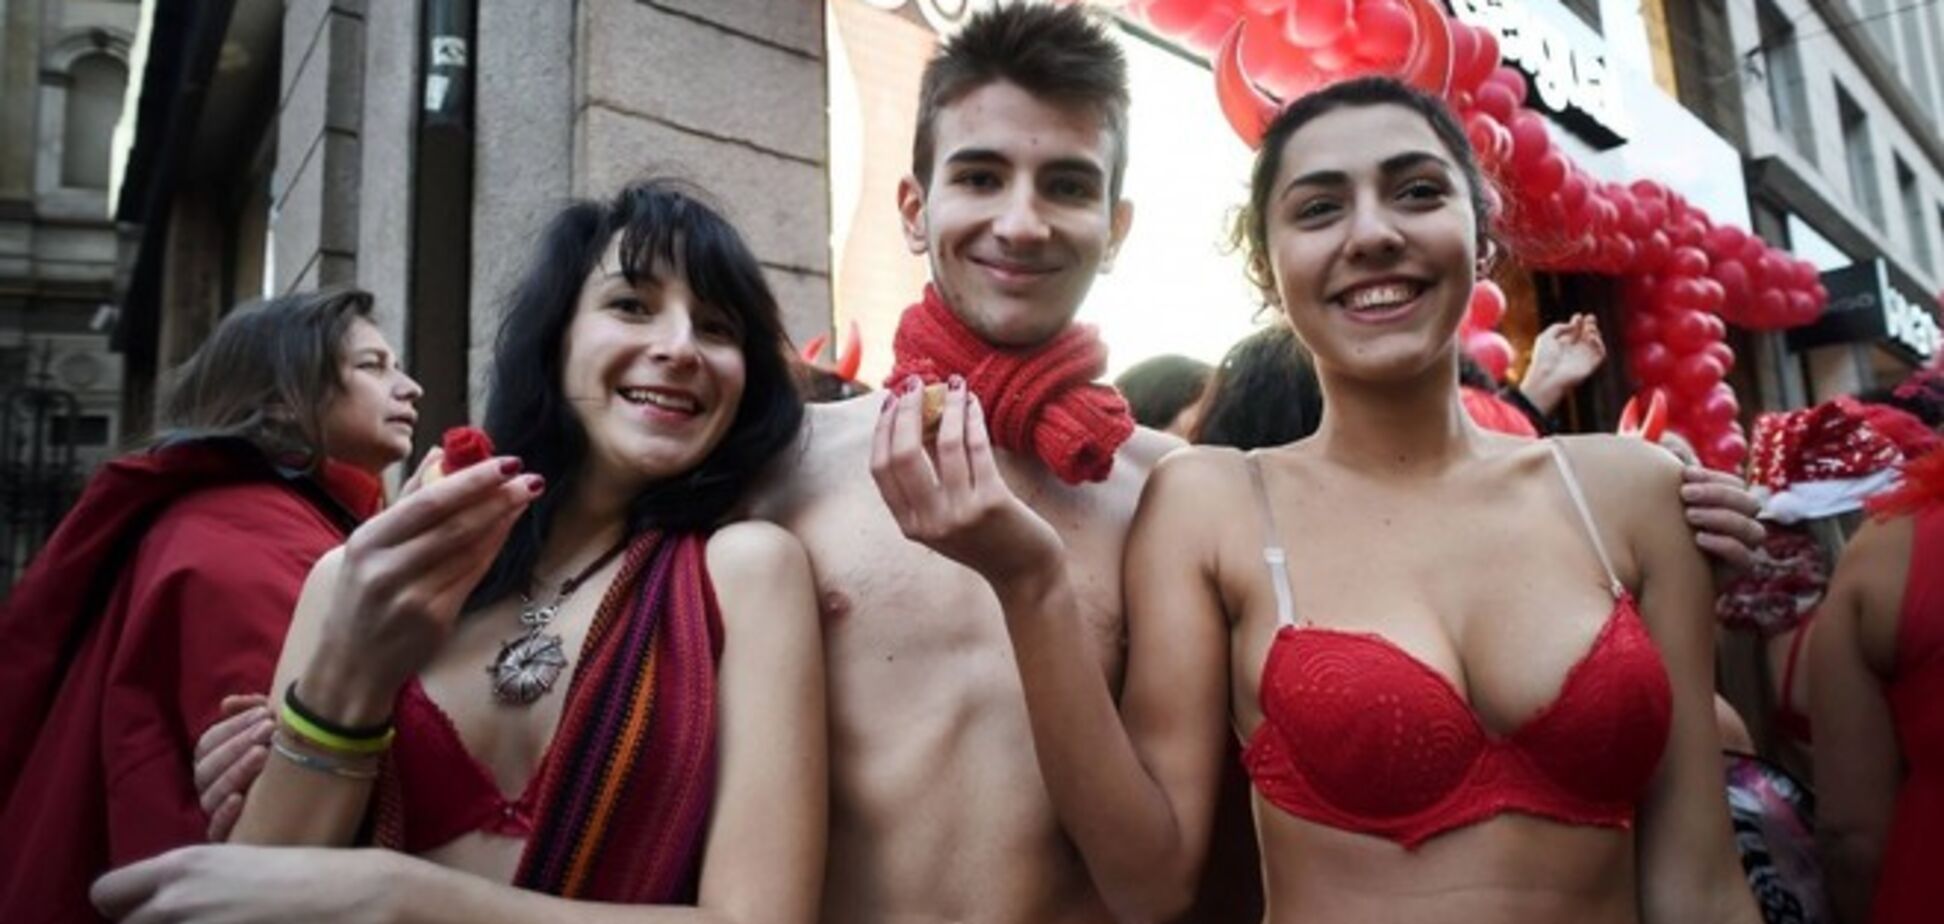 В Милане модный бутик штурмовали сотни посетителей в нижнем белье: фотофакт